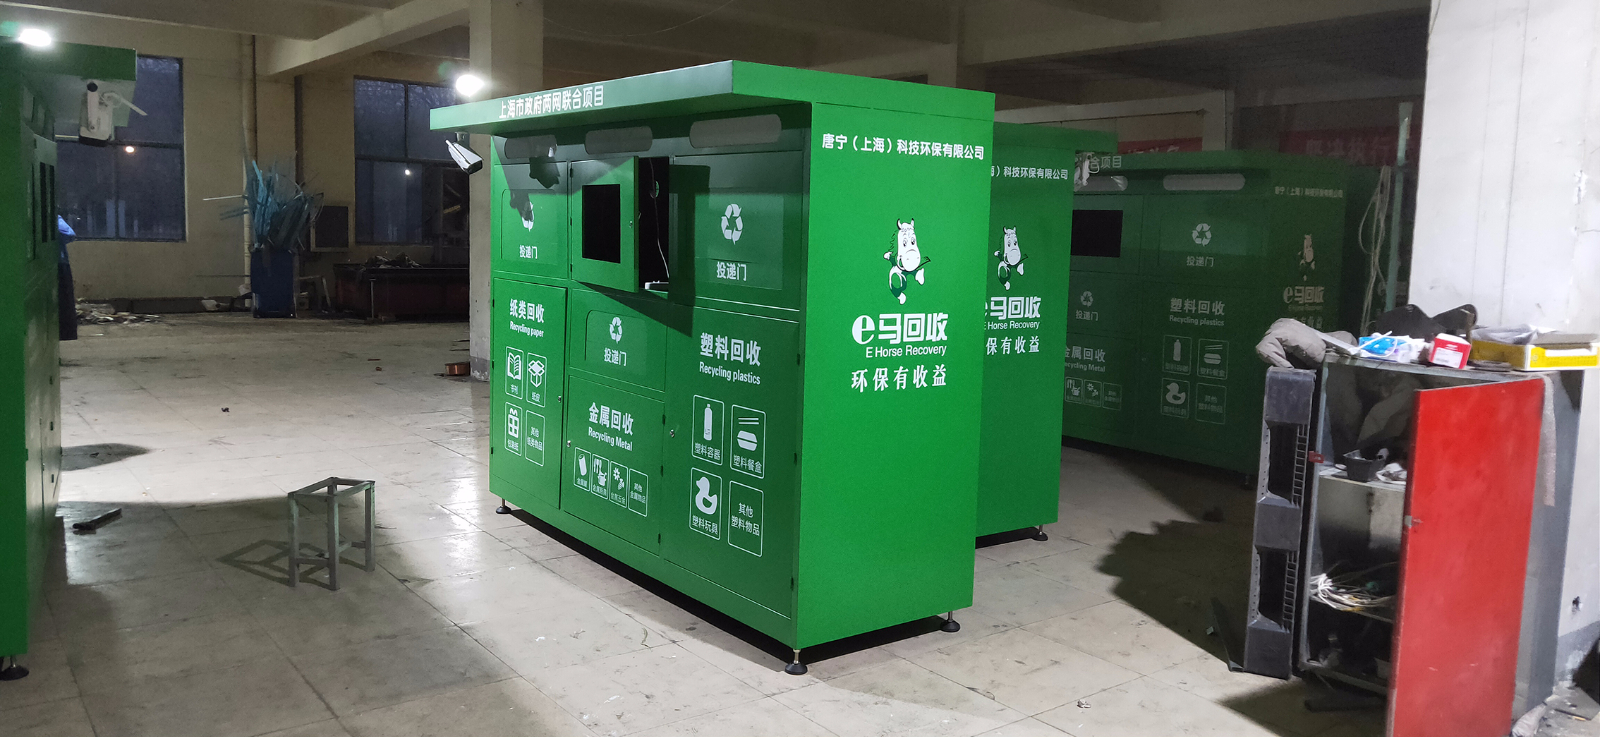 上海智能垃圾分类亭第二批发货2020.5